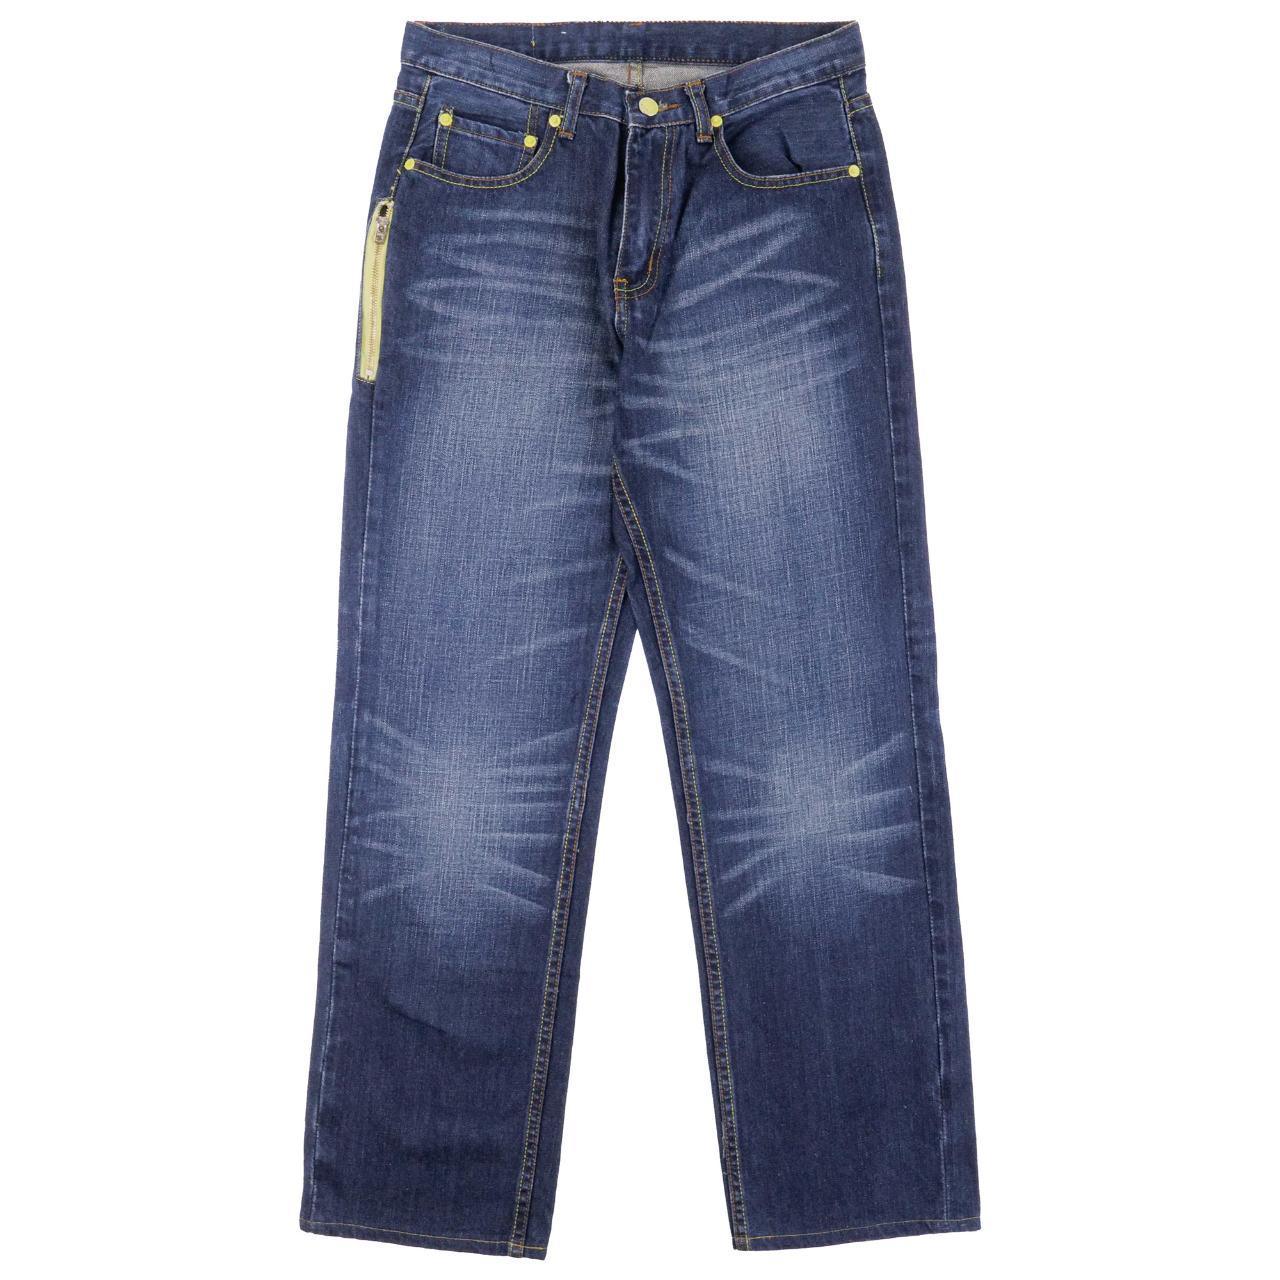 Vintage Levis X Fragment Denim Jeans Size W28 - Known Source